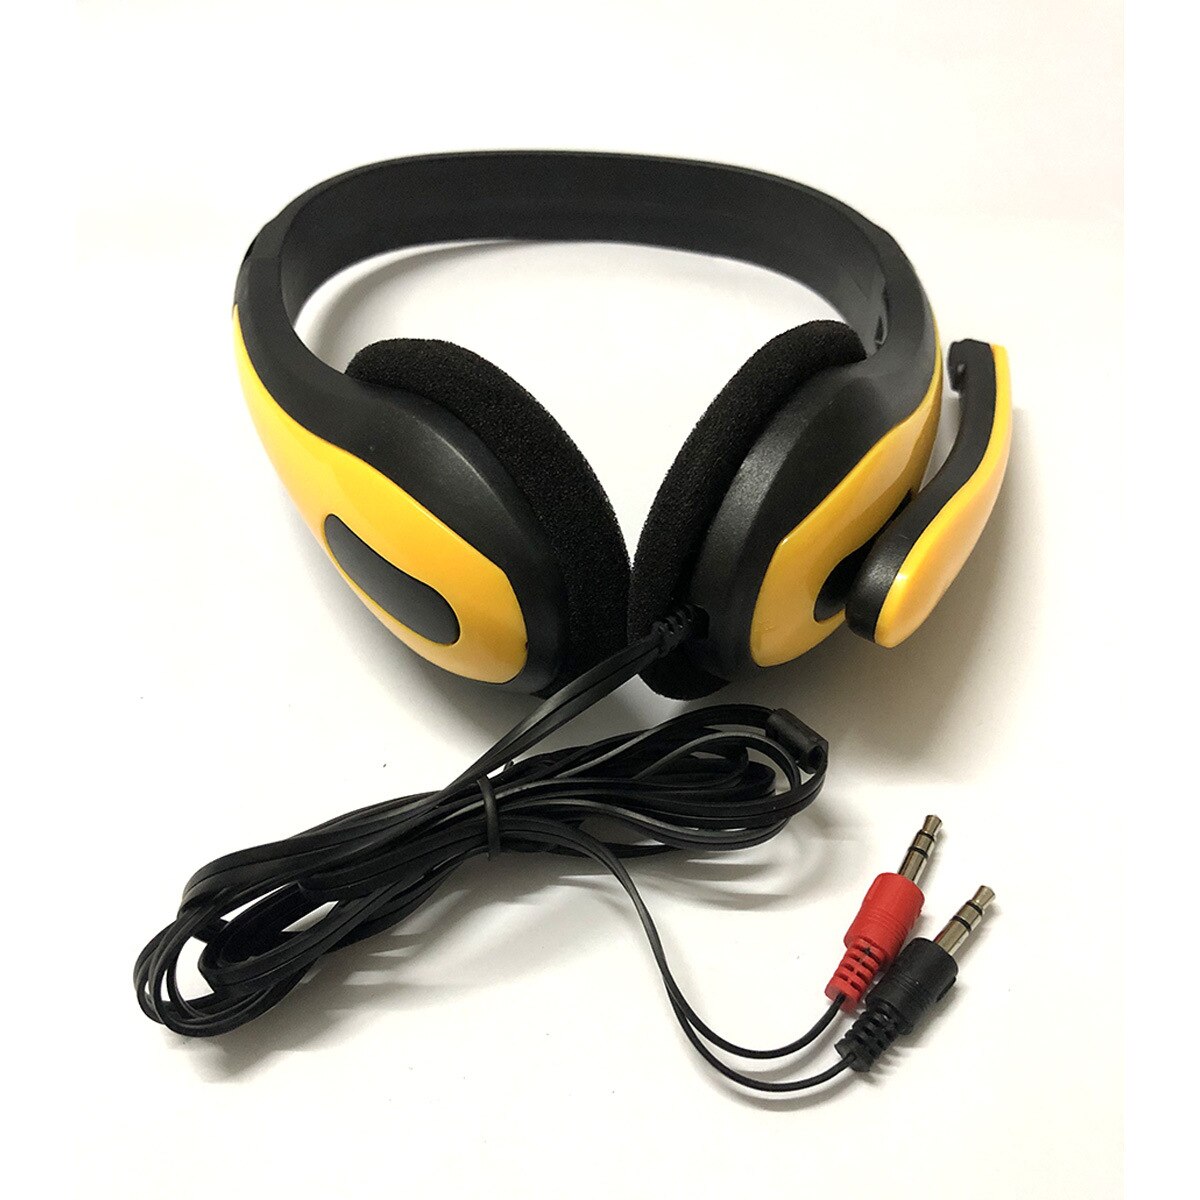 3.5mm filaire casque mouvement et Microphone mains libres jeu pour joueur casque élimination du bruit casque ordinateur portable tablette lecteur